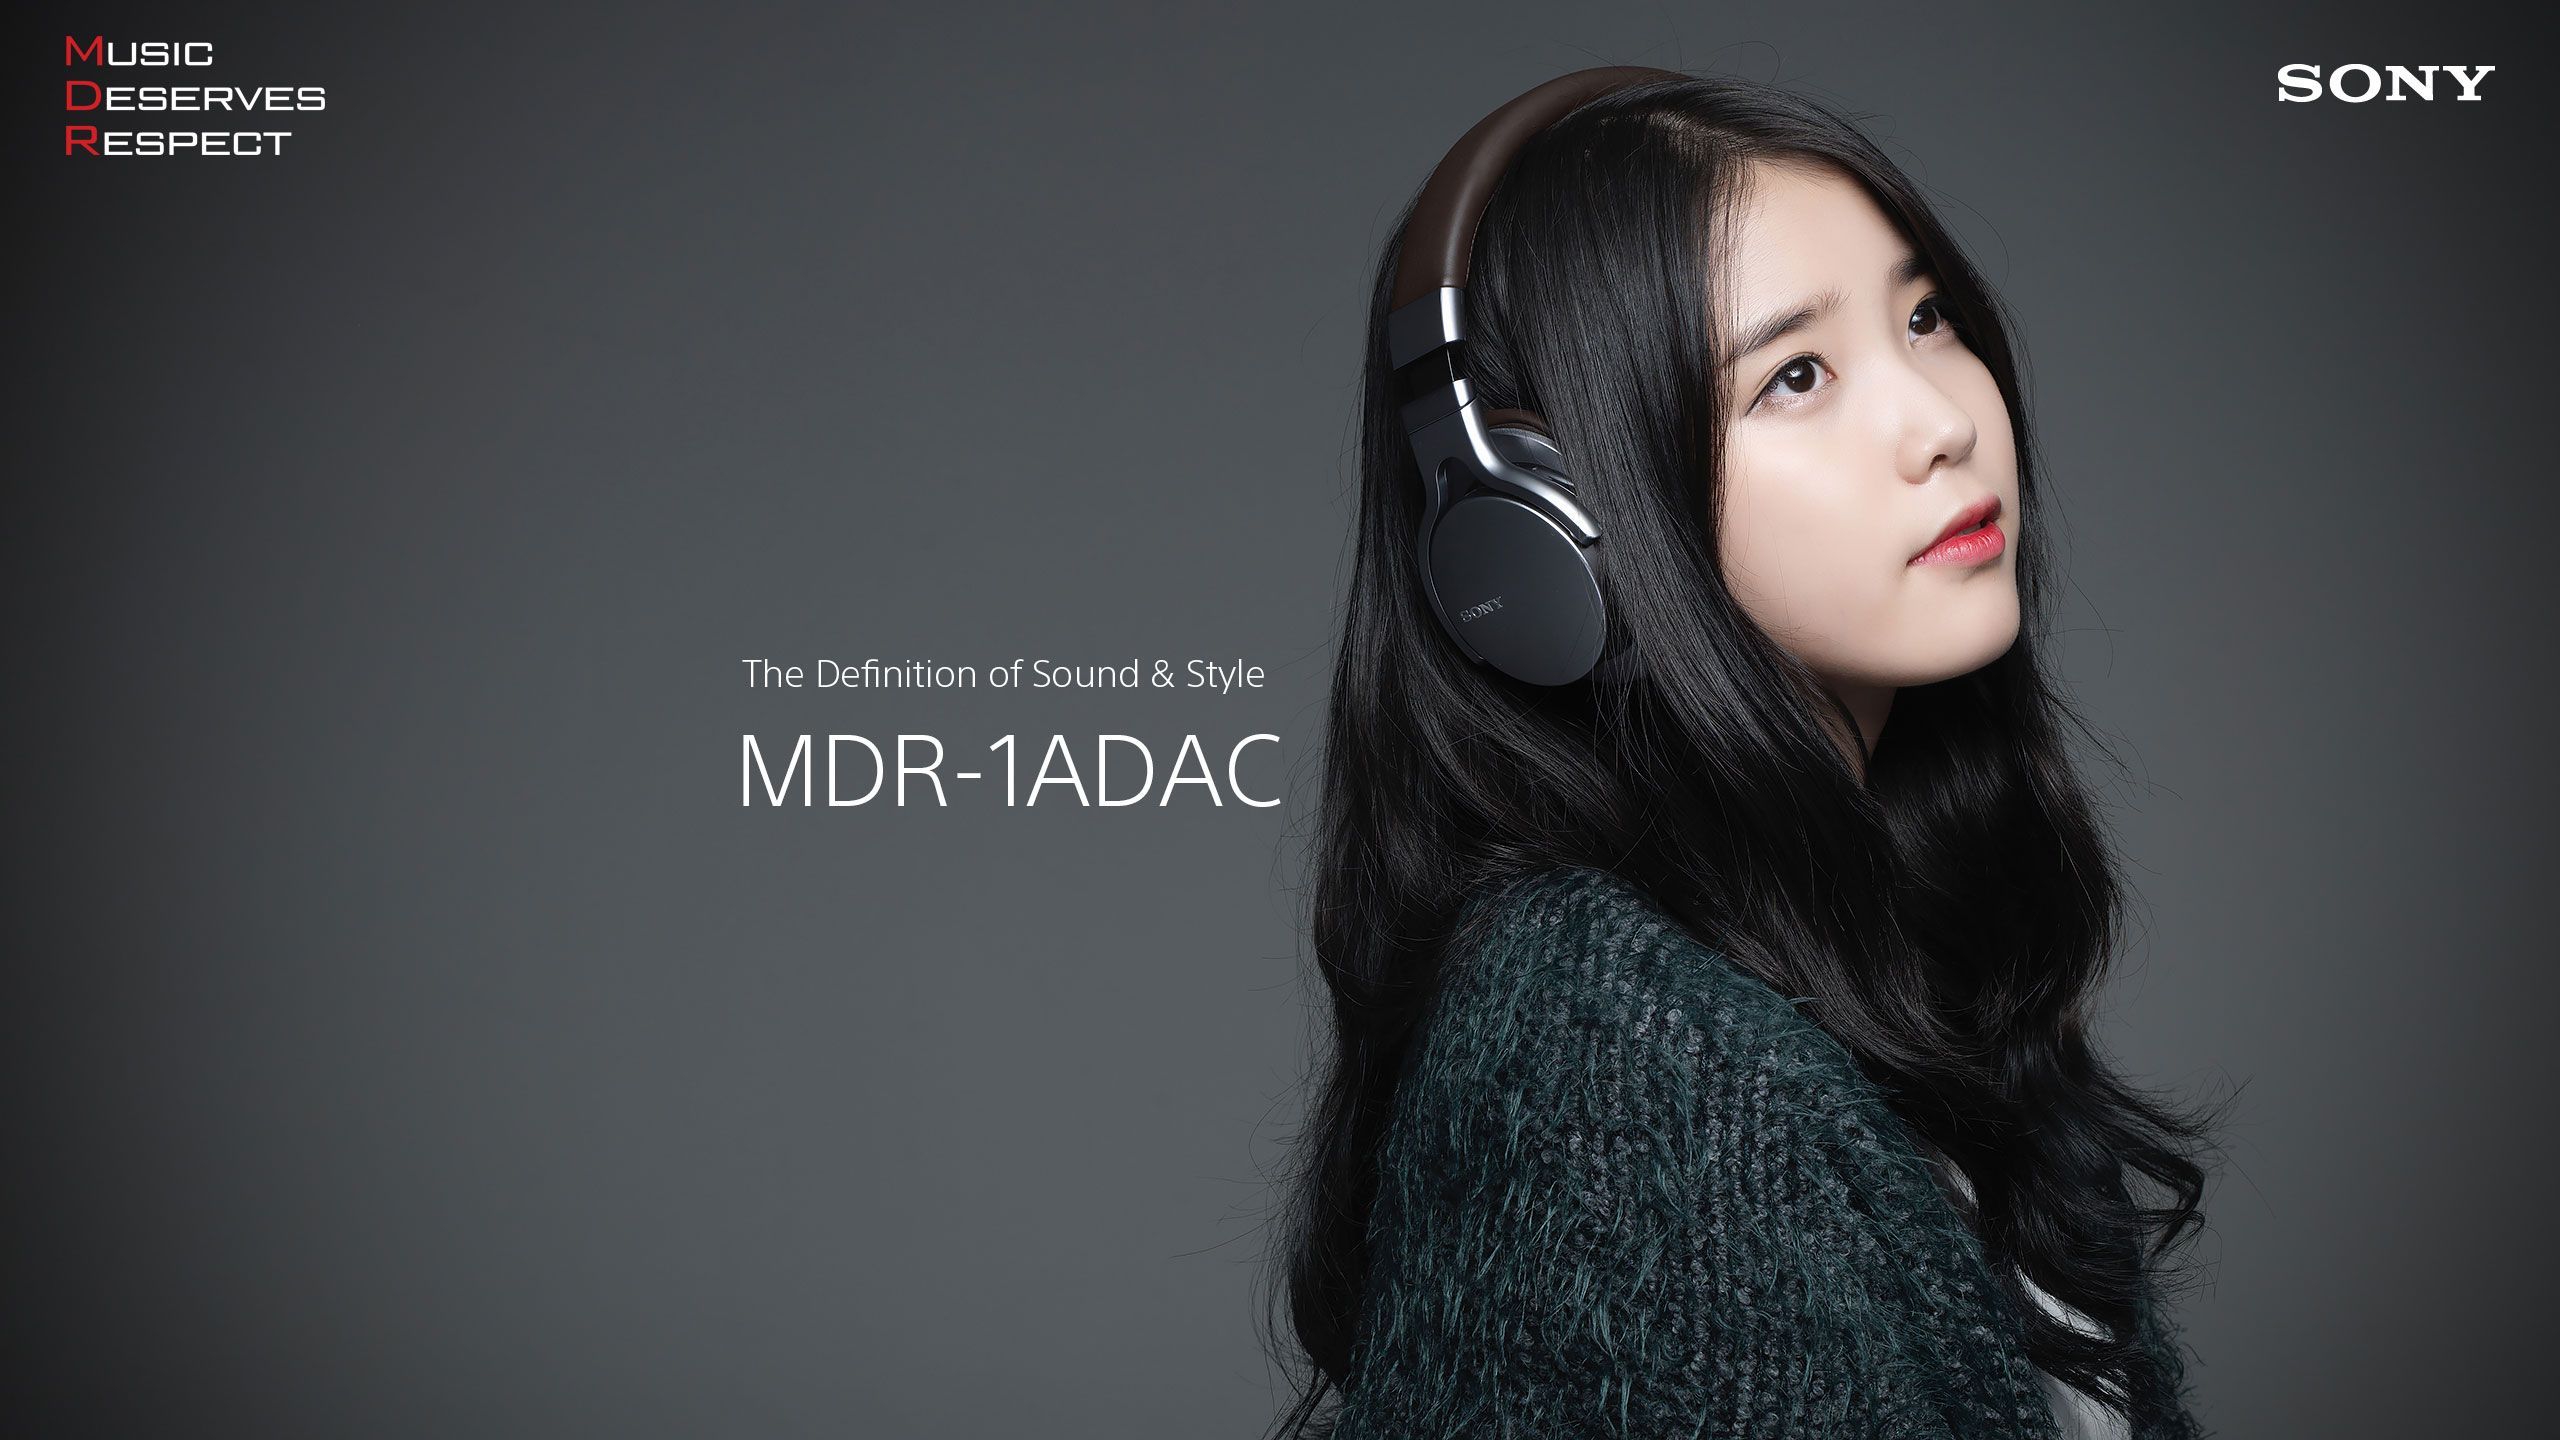 IU Sony MDR wallpaper K Girls. Girl with headphones, Singer, Korean singer